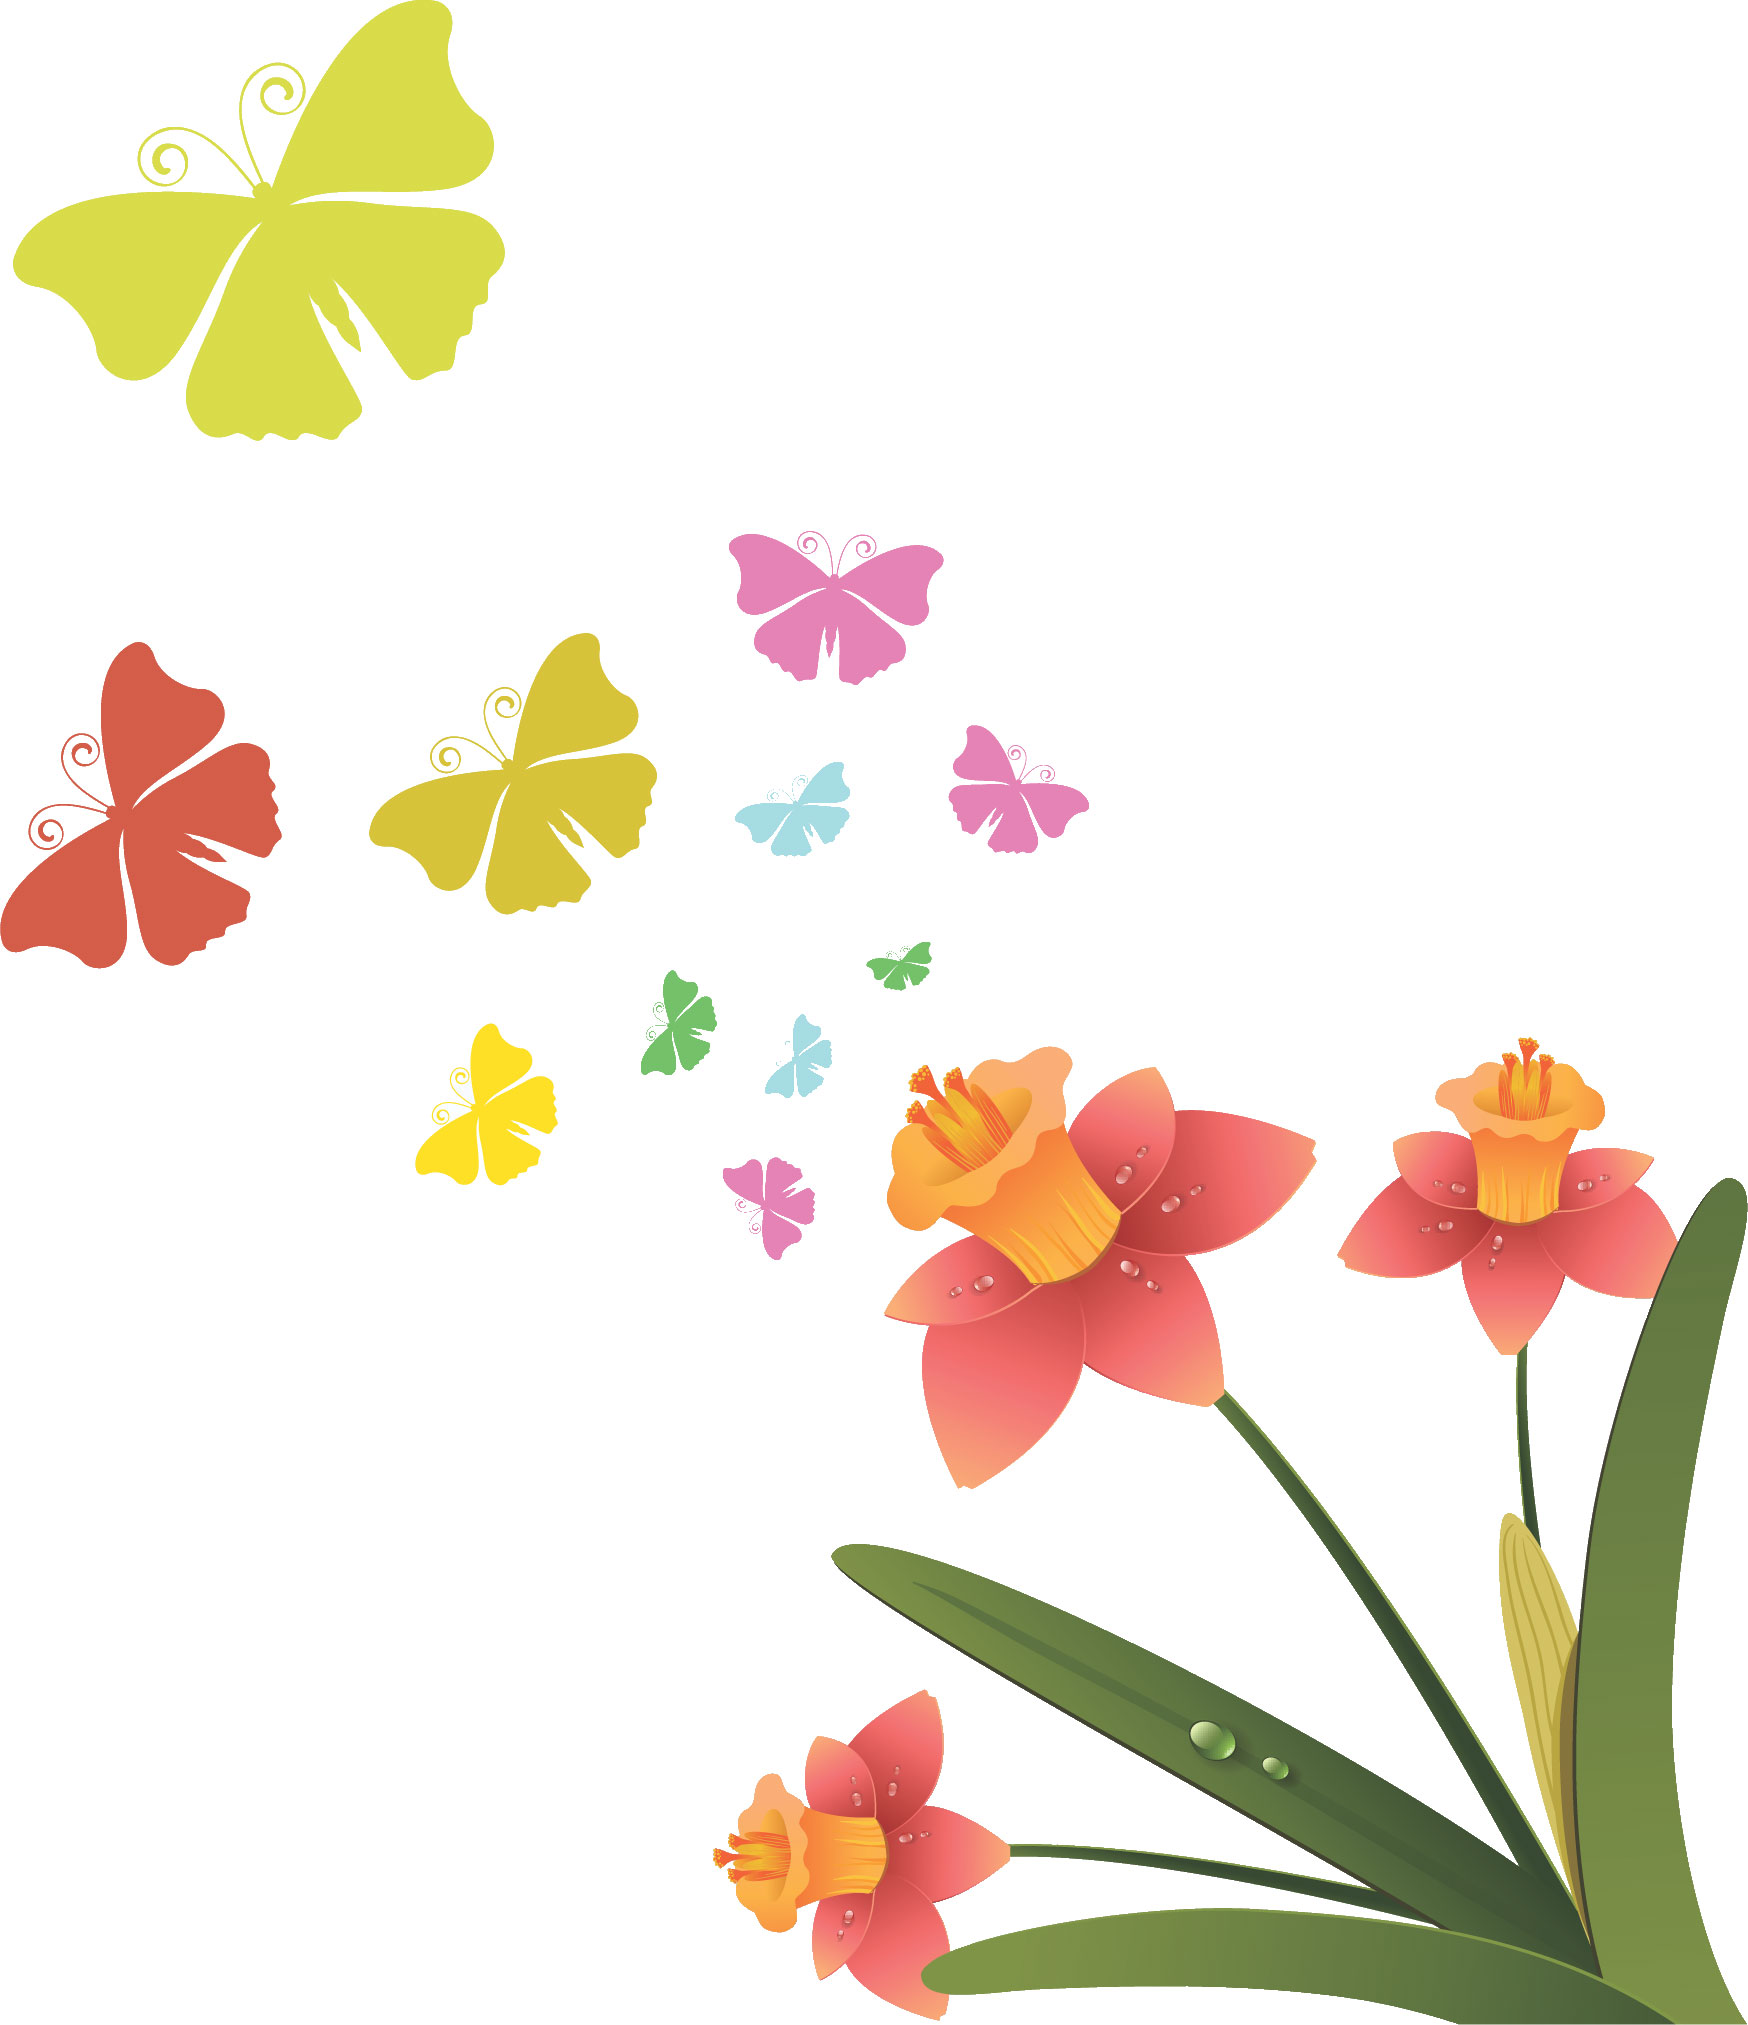 ポップでかわいい花のイラスト フリー素材 No 356 ピンク 水仙 蝶々